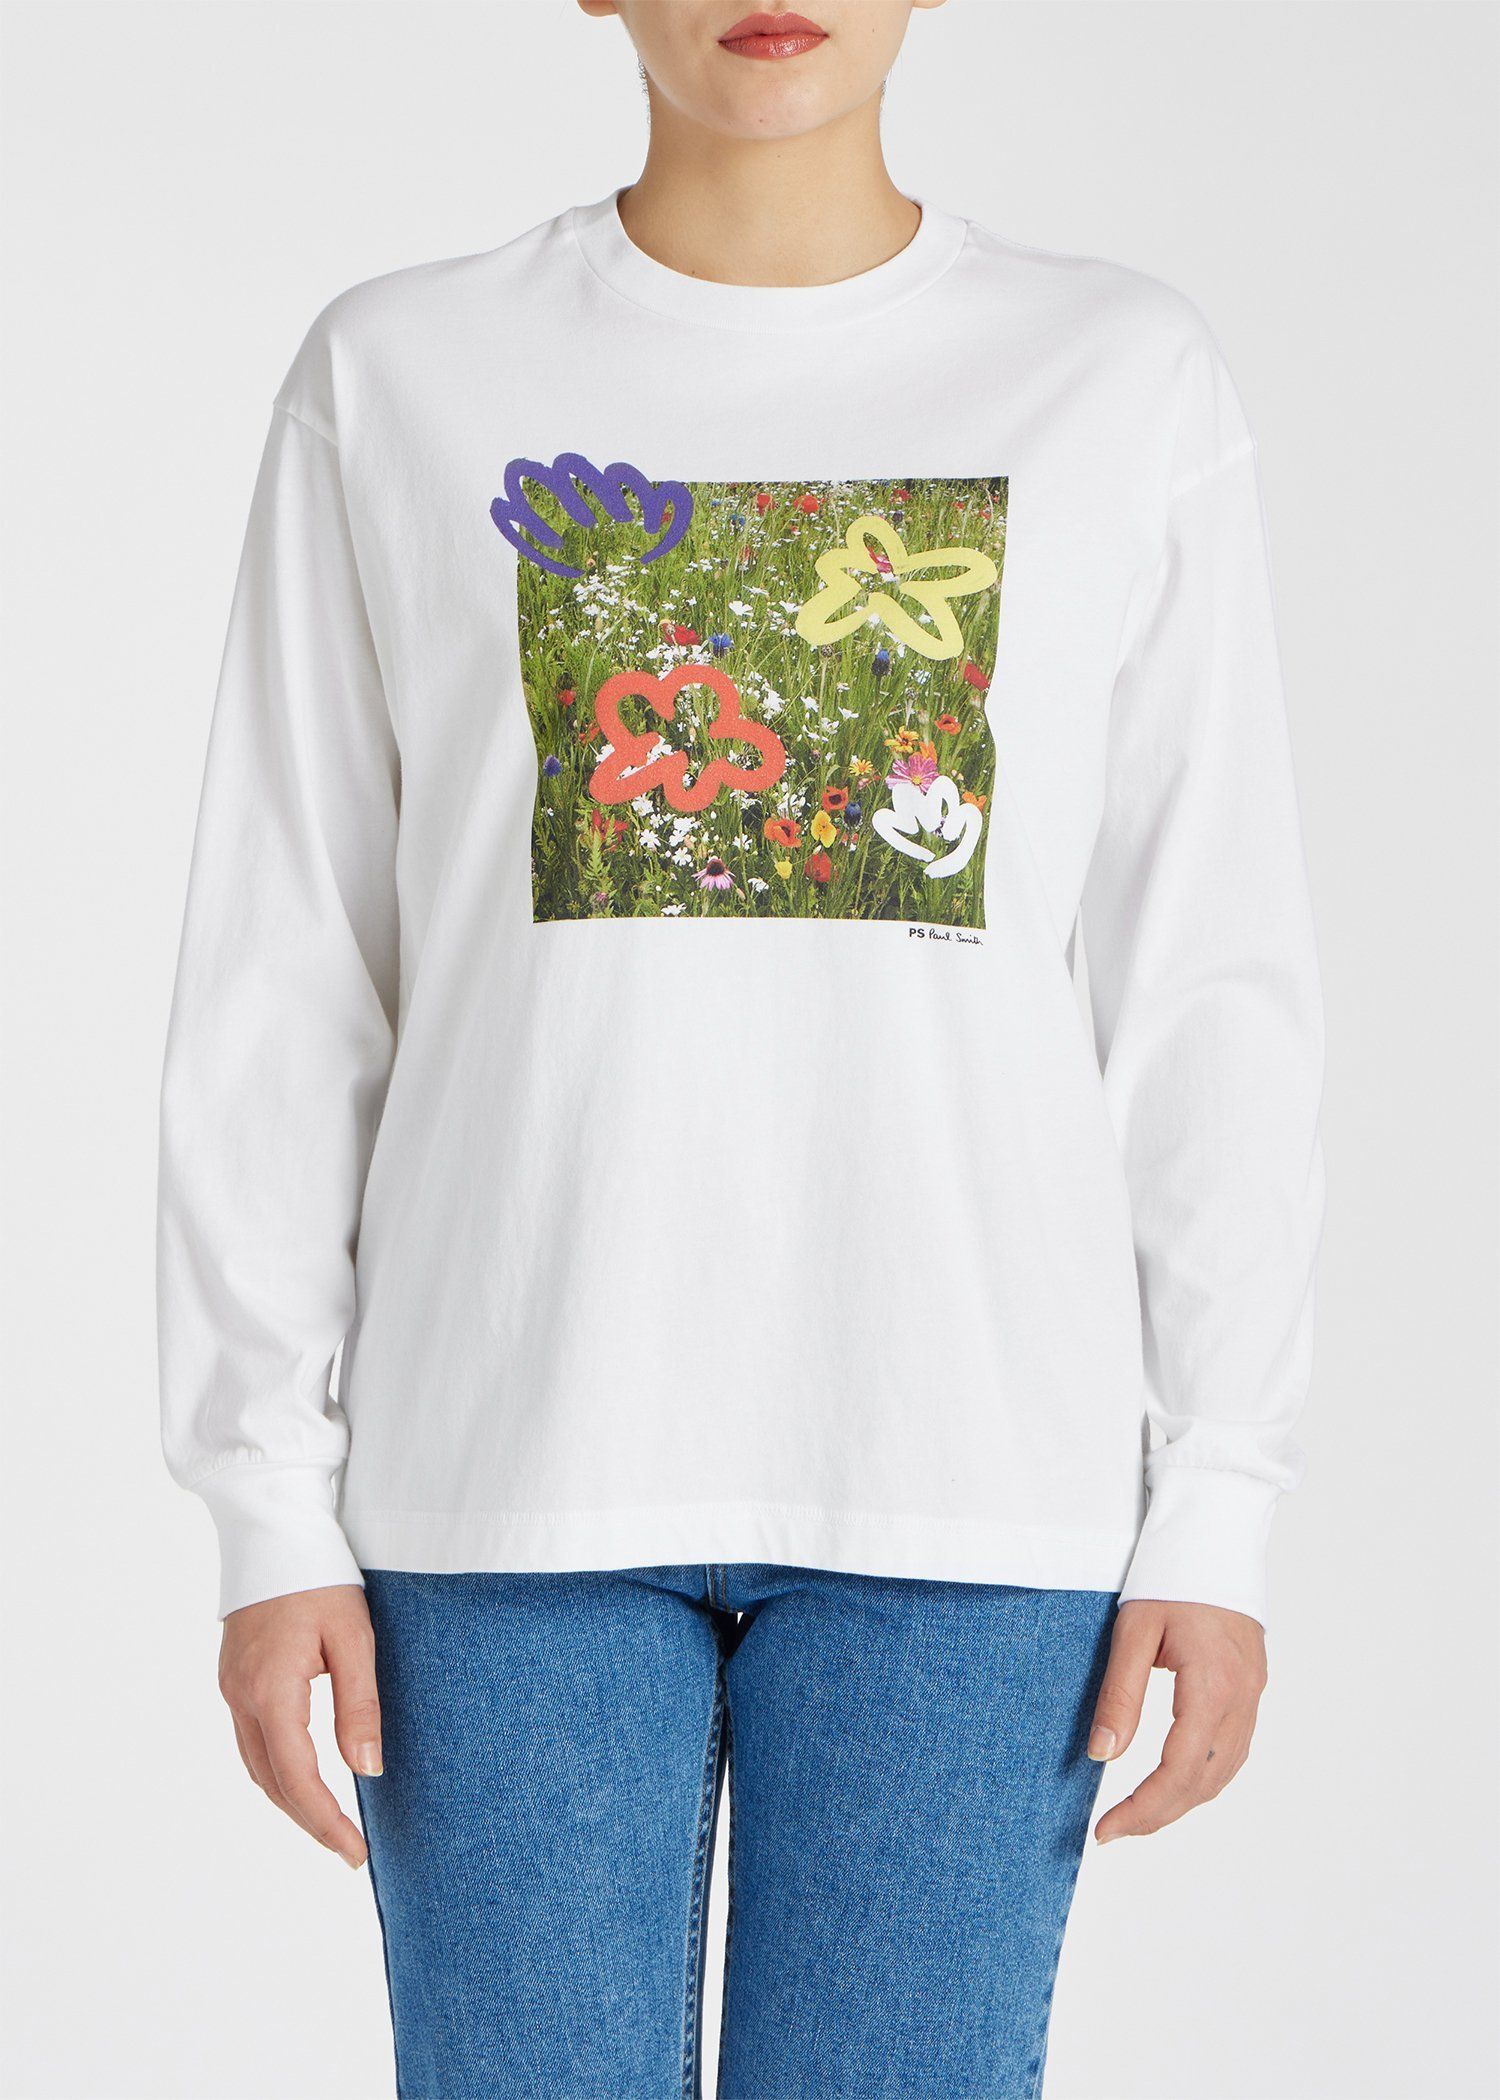 ウィメンズ "Wild flowers" 長袖Tシャツ